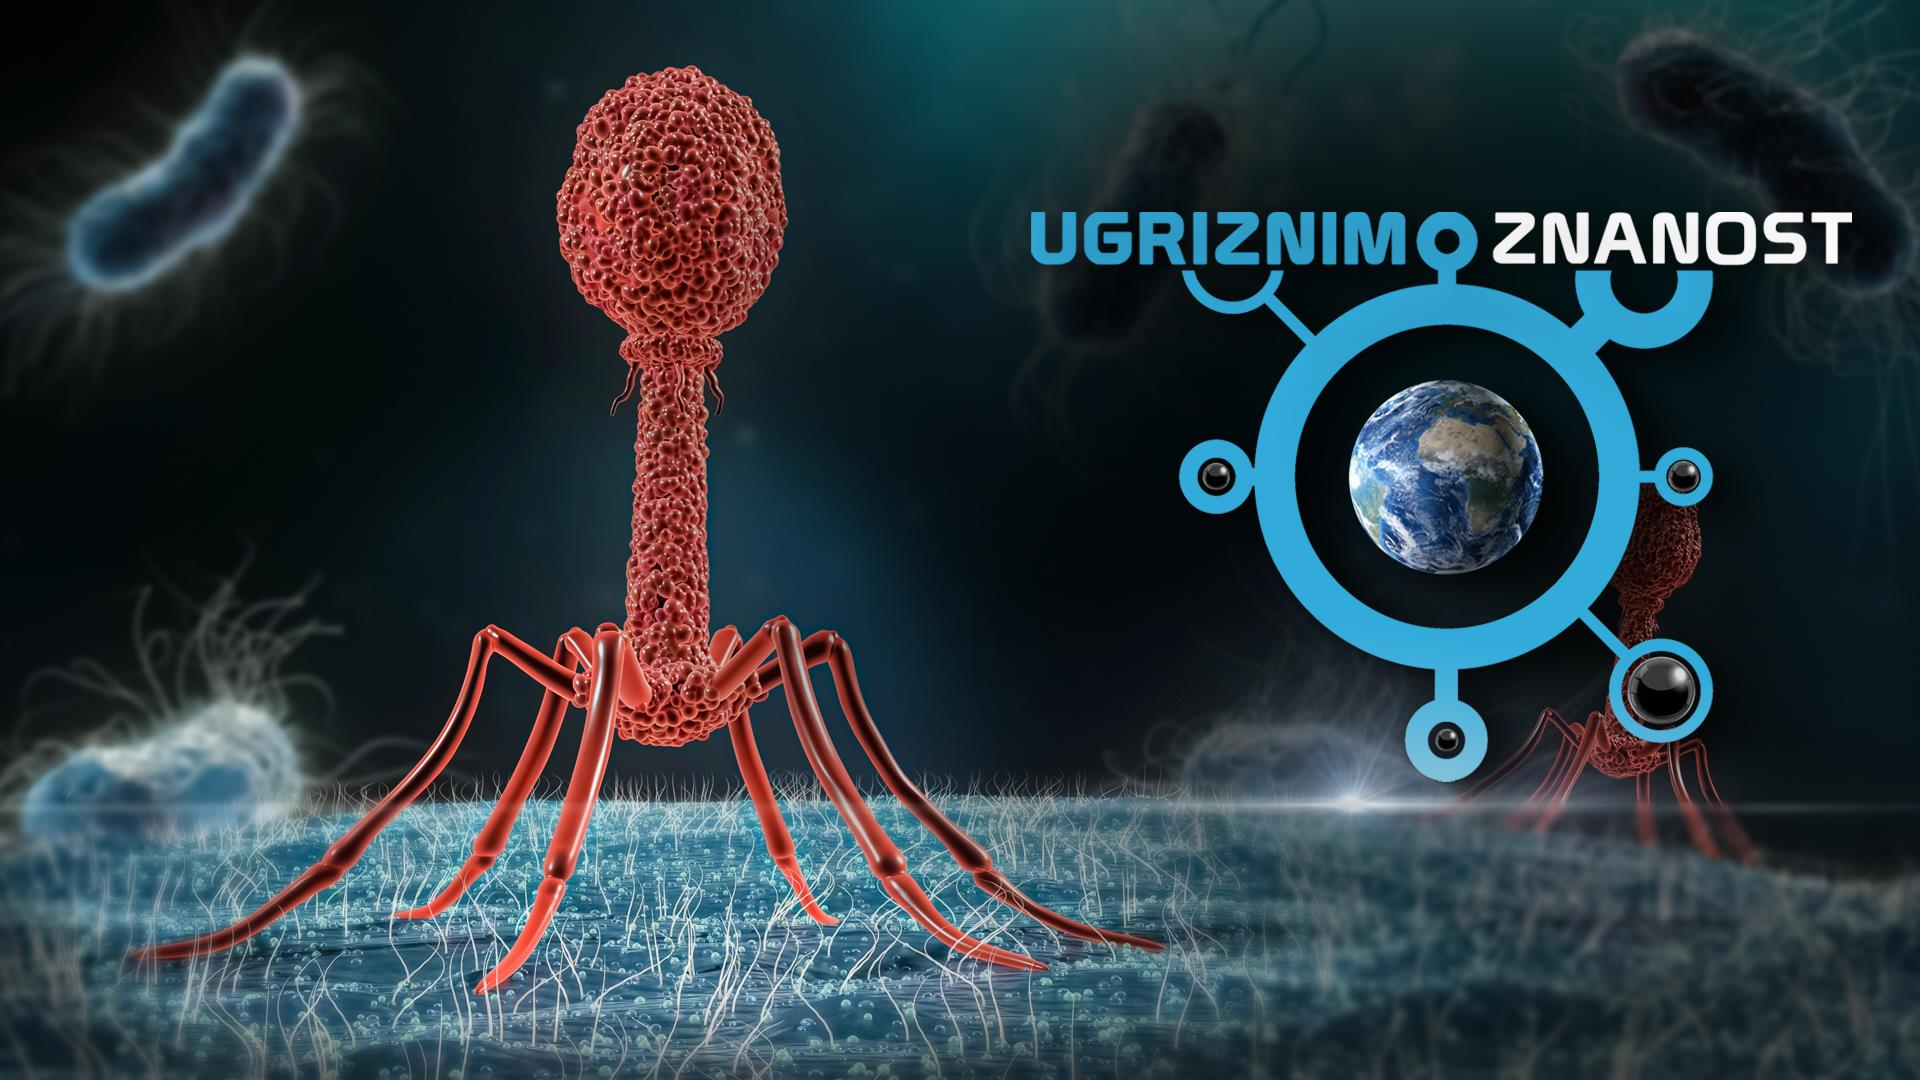 Ugriznimo znanost: Bakteriofagi - orožje proti bakterijam